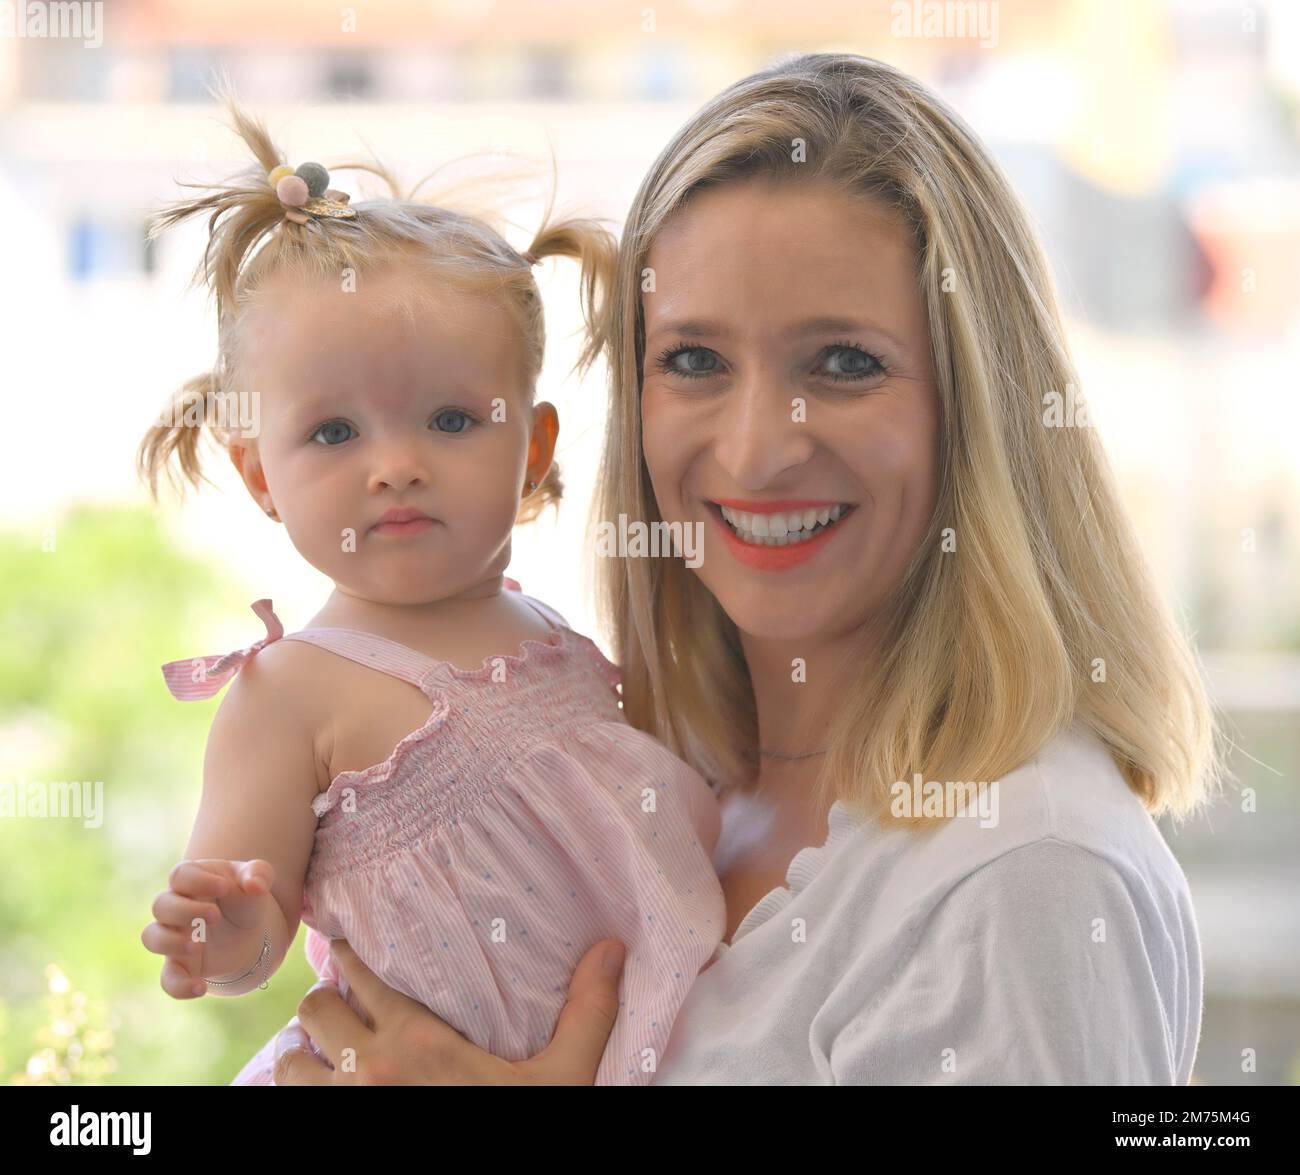 La mère a une fille, un tout-petit, 11 mois, sur le bras, souriant, Bade-Wurtemberg, Allemagne Banque D'Images